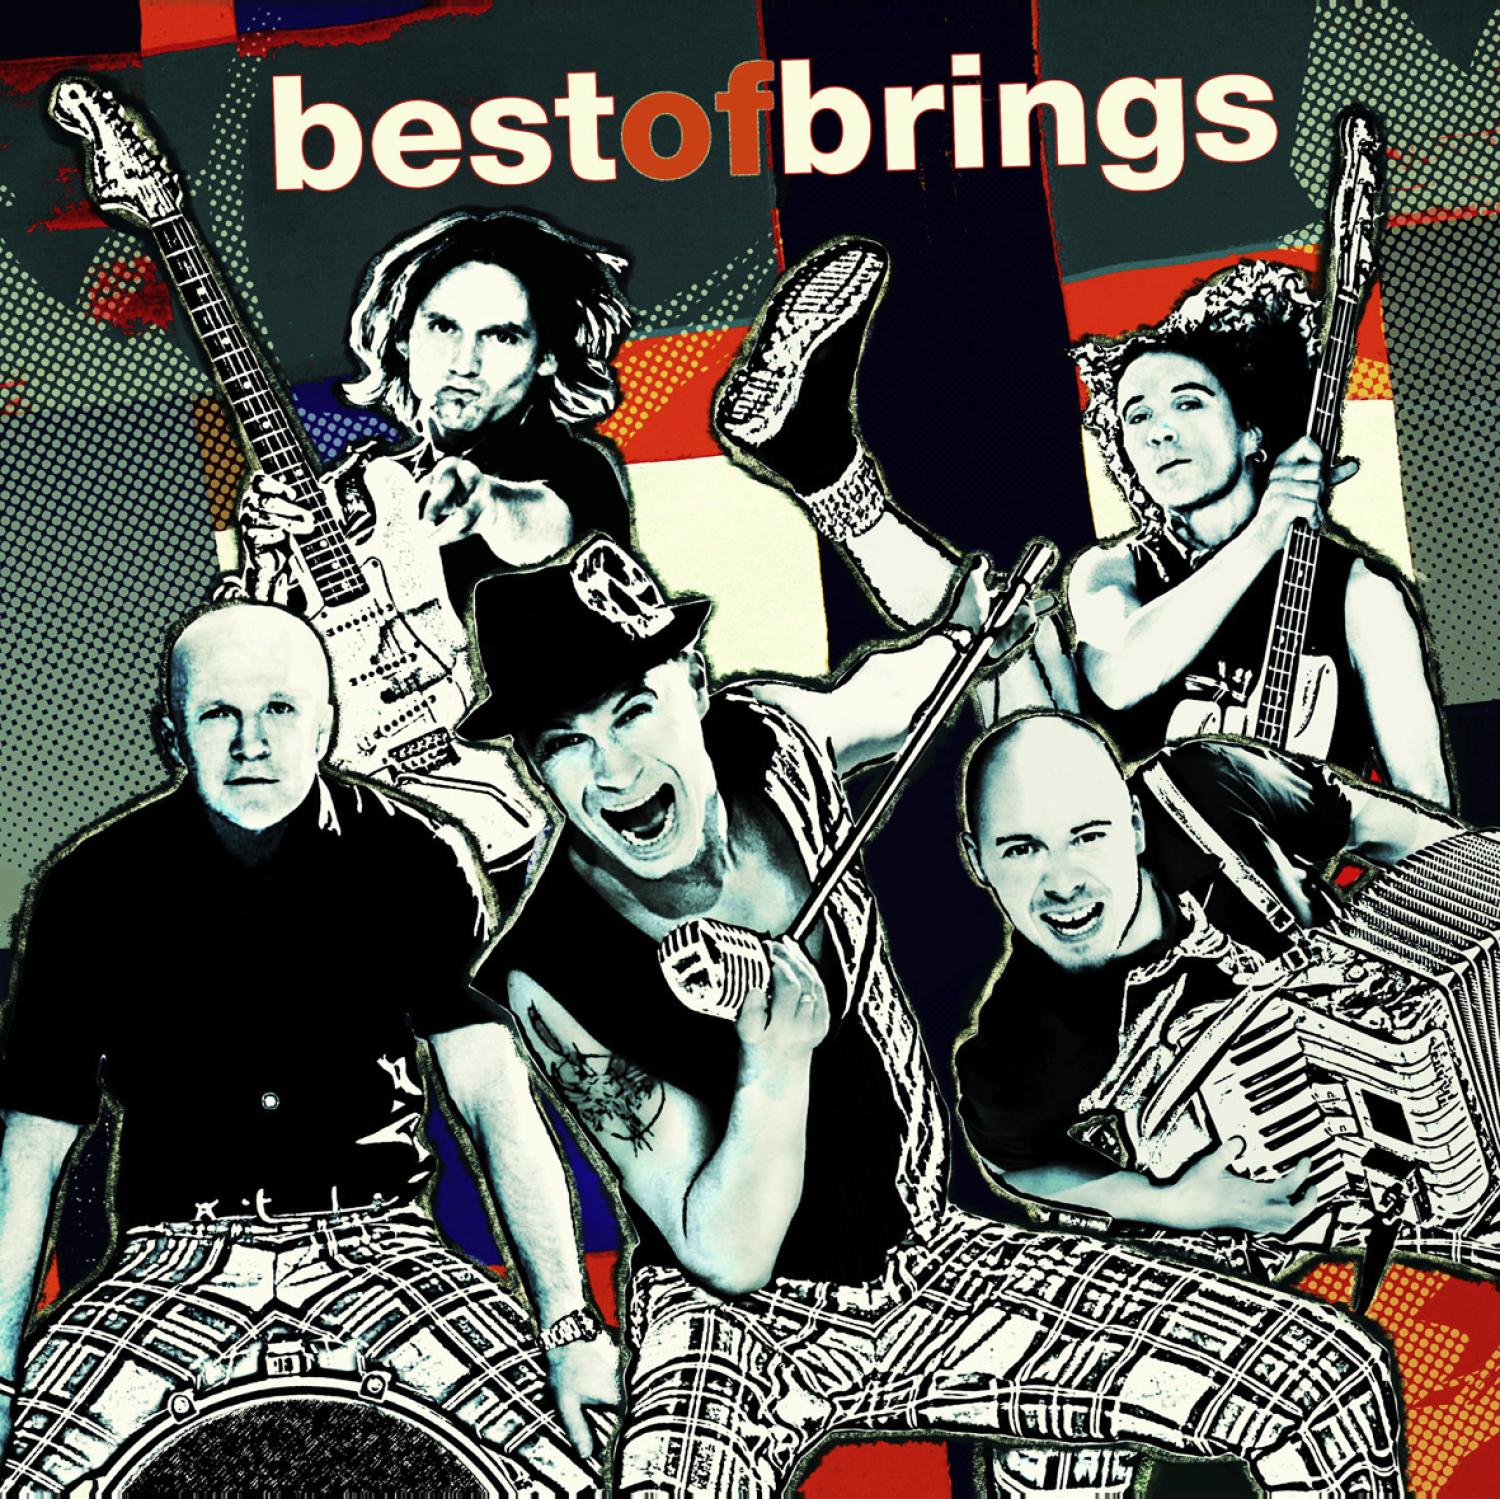 Brings - Best Of - (CD)